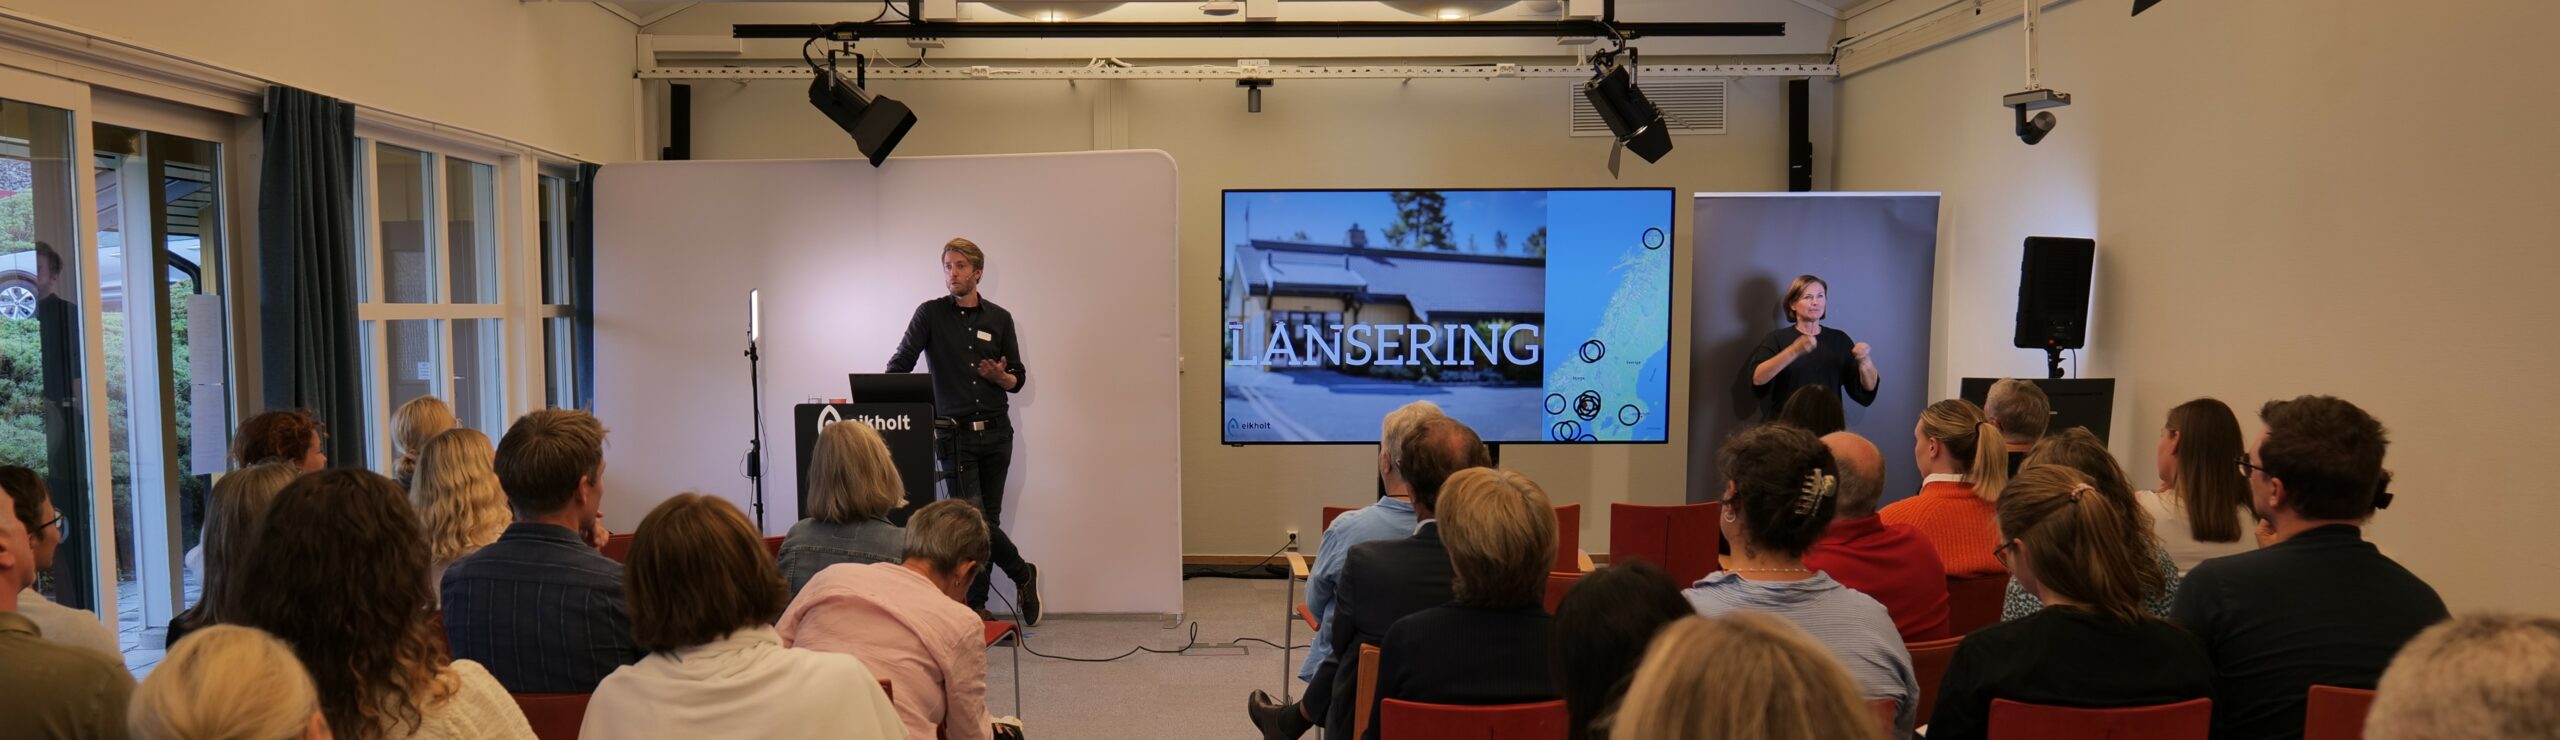 Rolf Mjønes står foran et publikum og presenterer Eikholt-testen på en skjerm